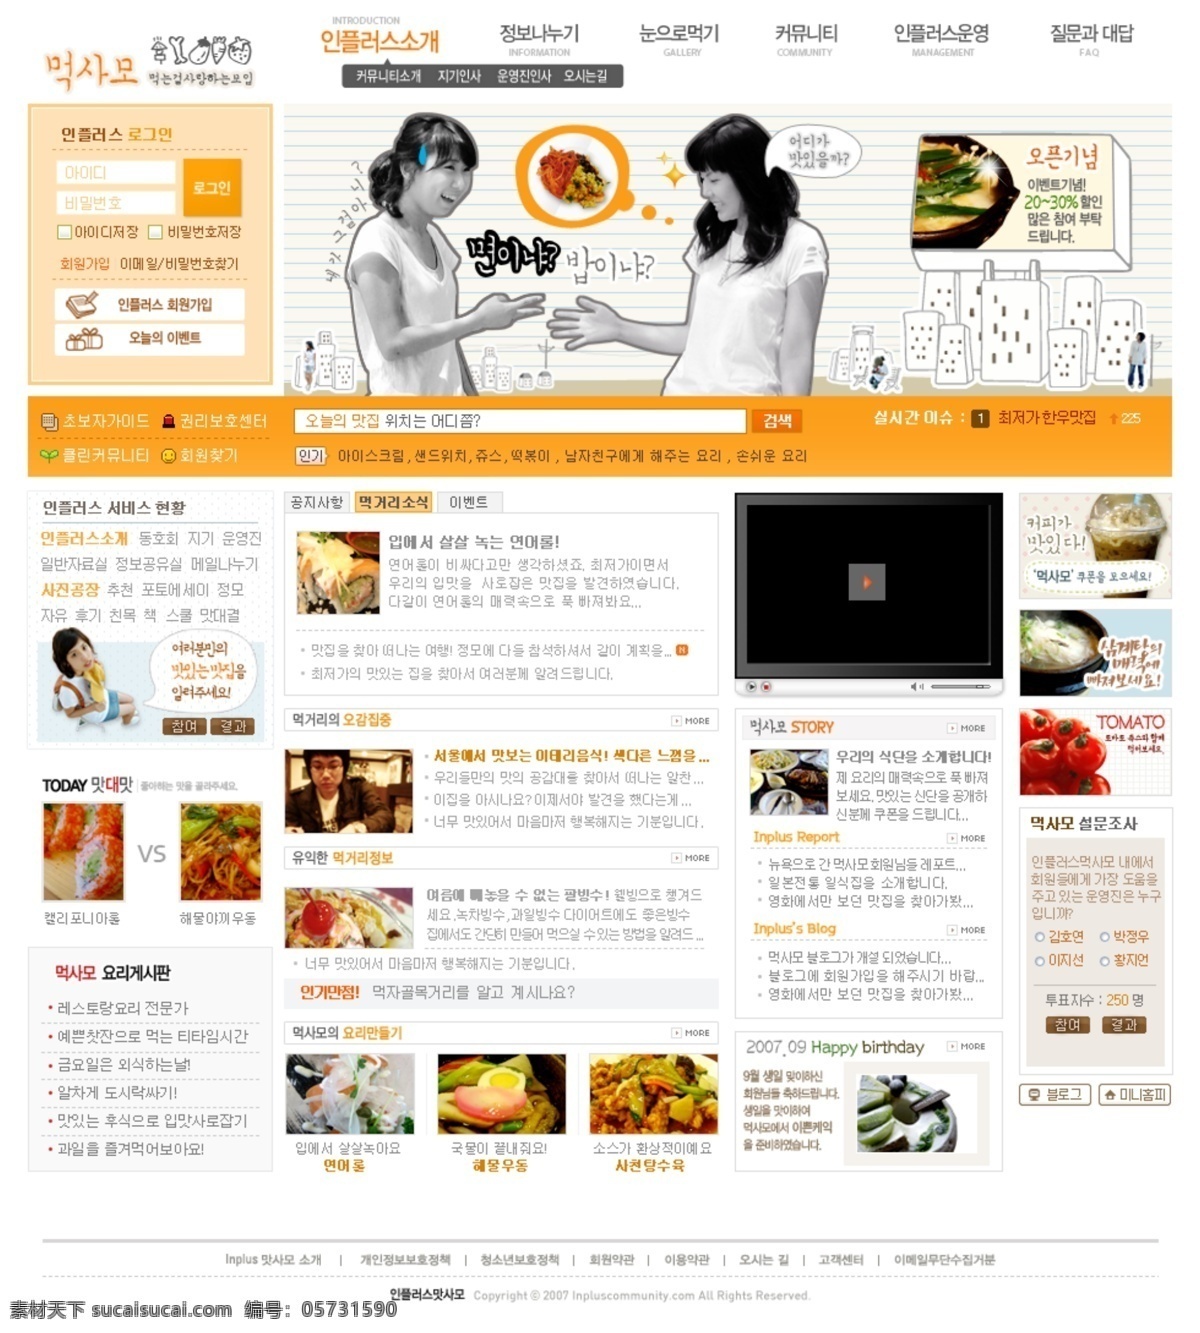 美食 小吃 社区 活动 网页模板 韩国风格 社区活动 黄色色调 网页素材